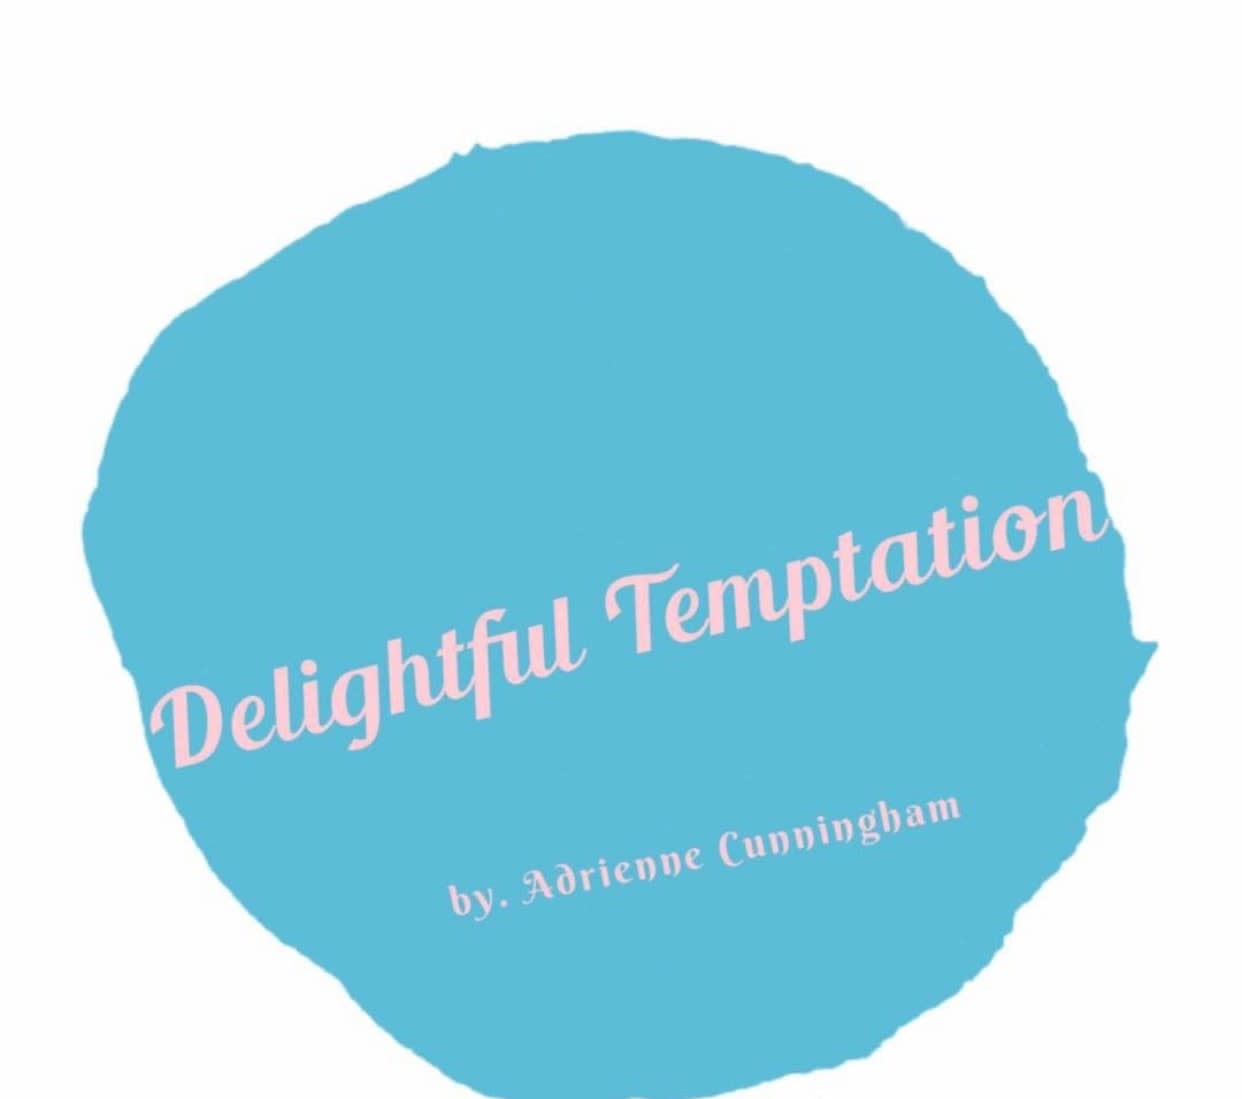 Delightful Temptations